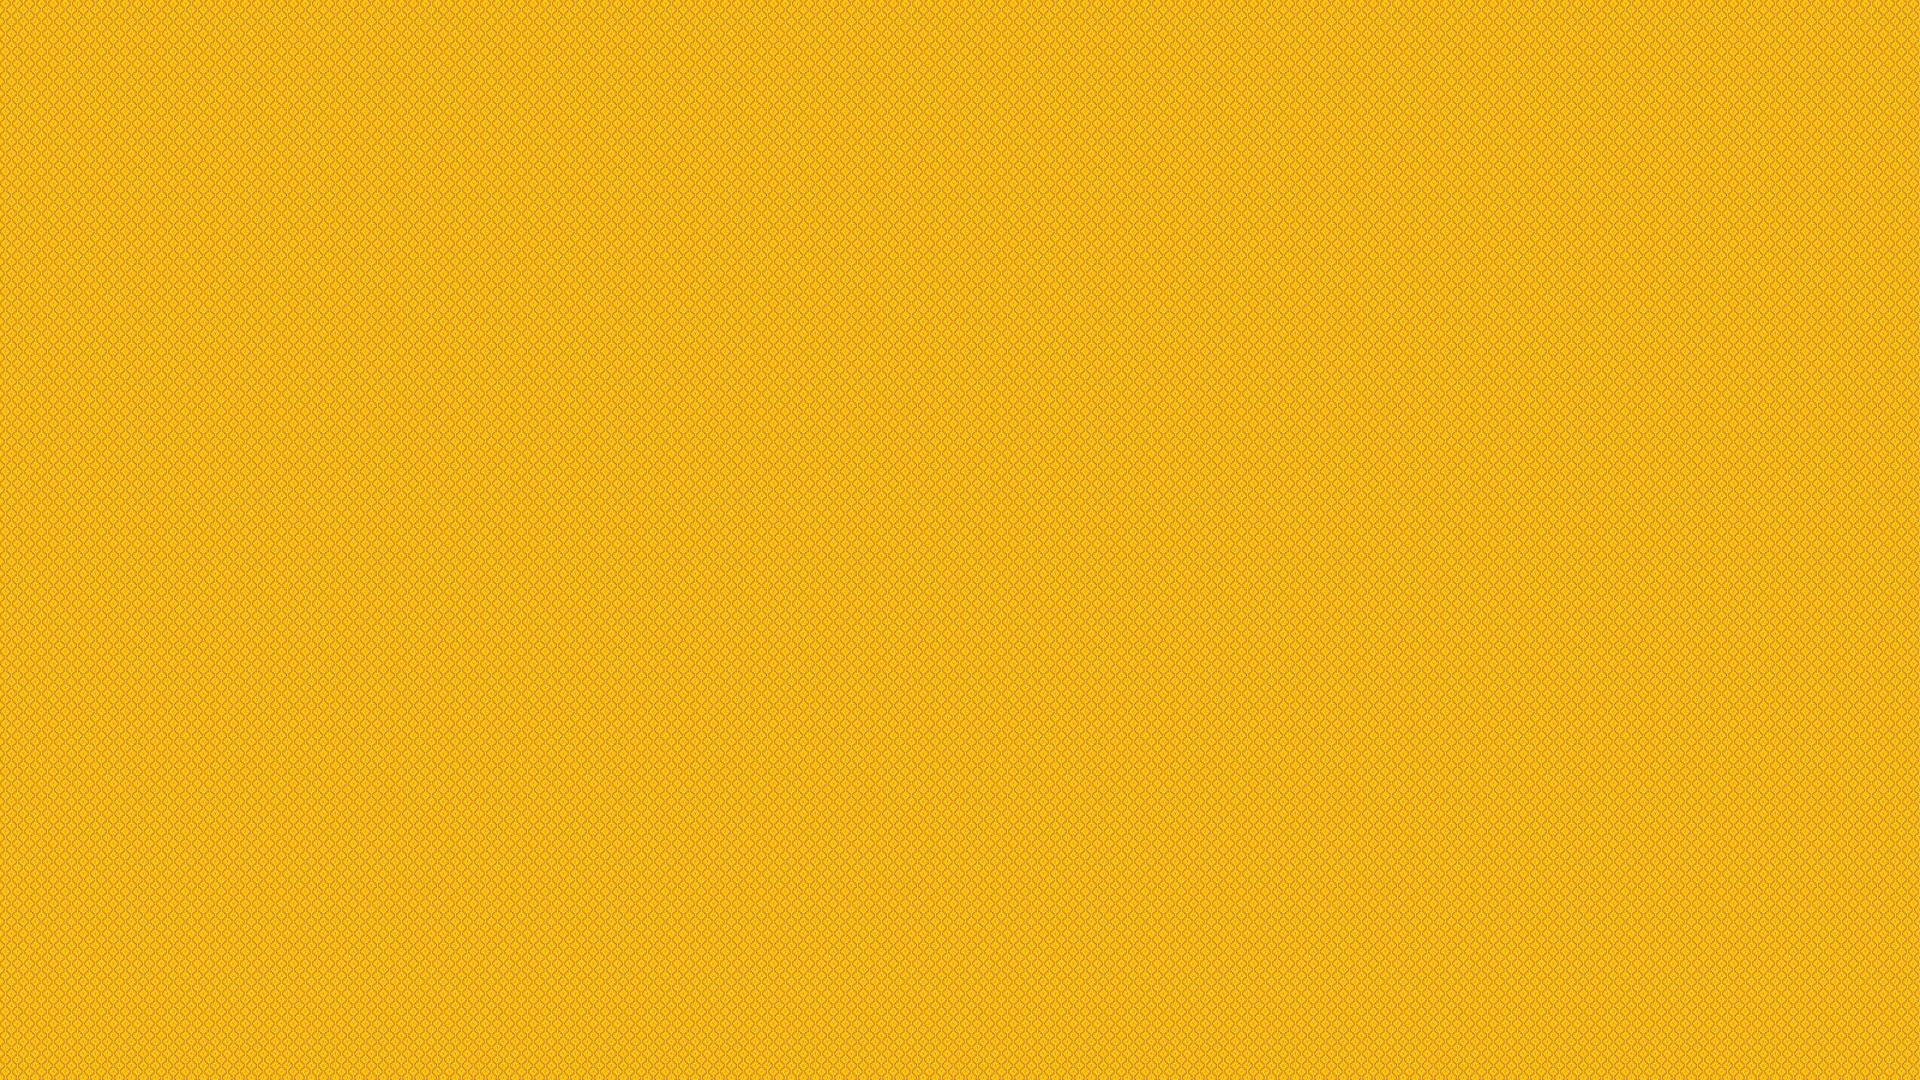 Golden Plain Yellow Desktop